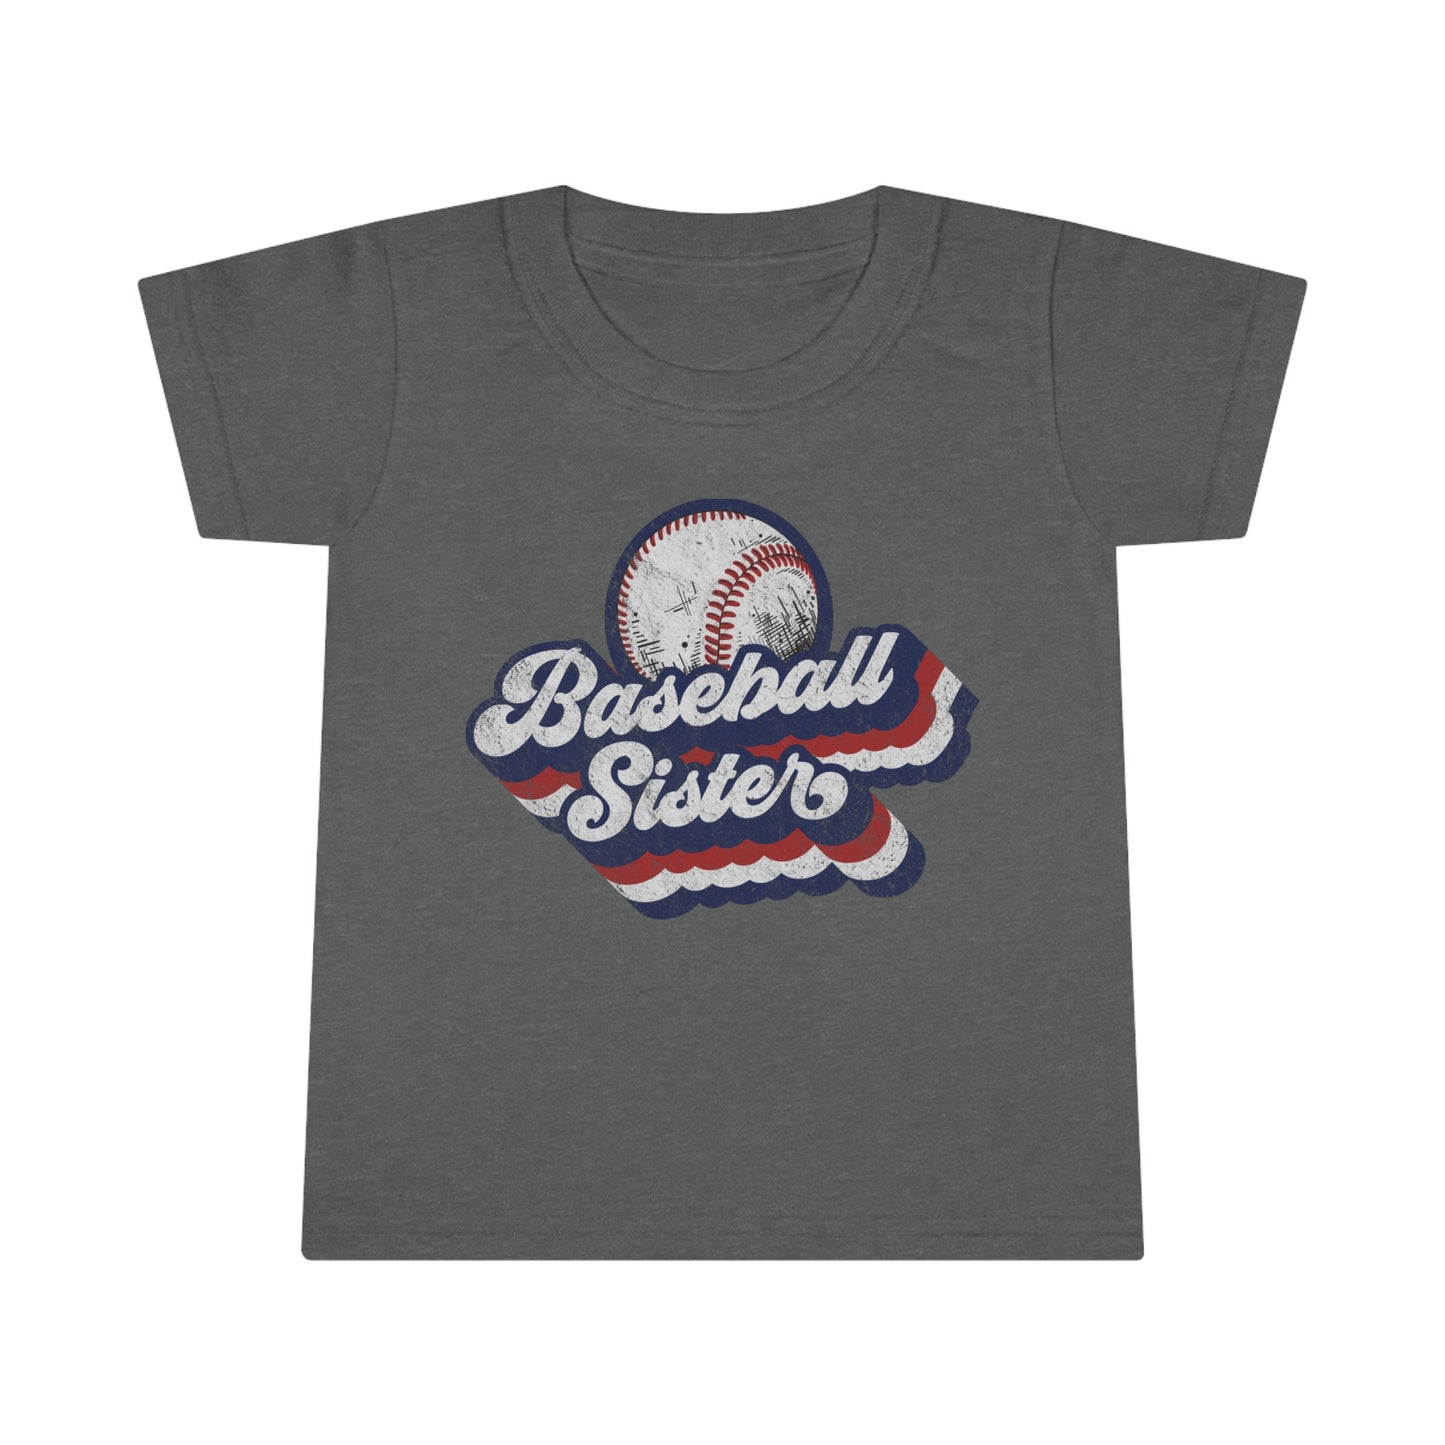 Retro Baseball Sister Toddler T-shirt